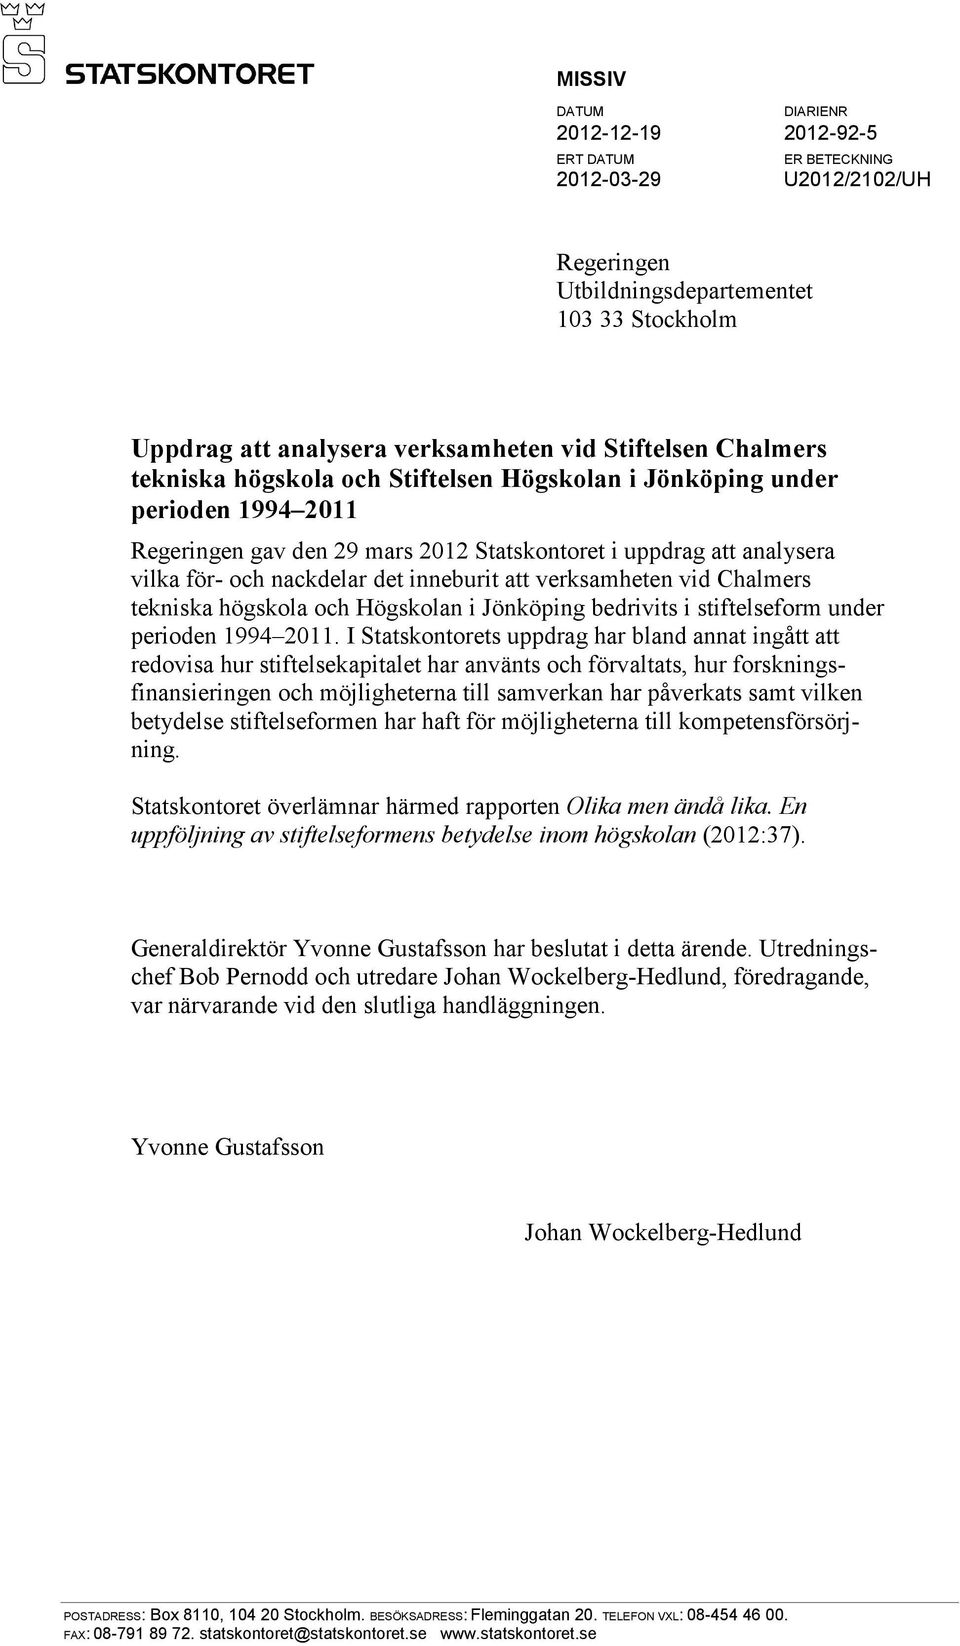 att verksamheten vid Chalmers tekniska högskola och Högskolan i Jönköping bedrivits i stiftelseform under perioden 1994 2011.